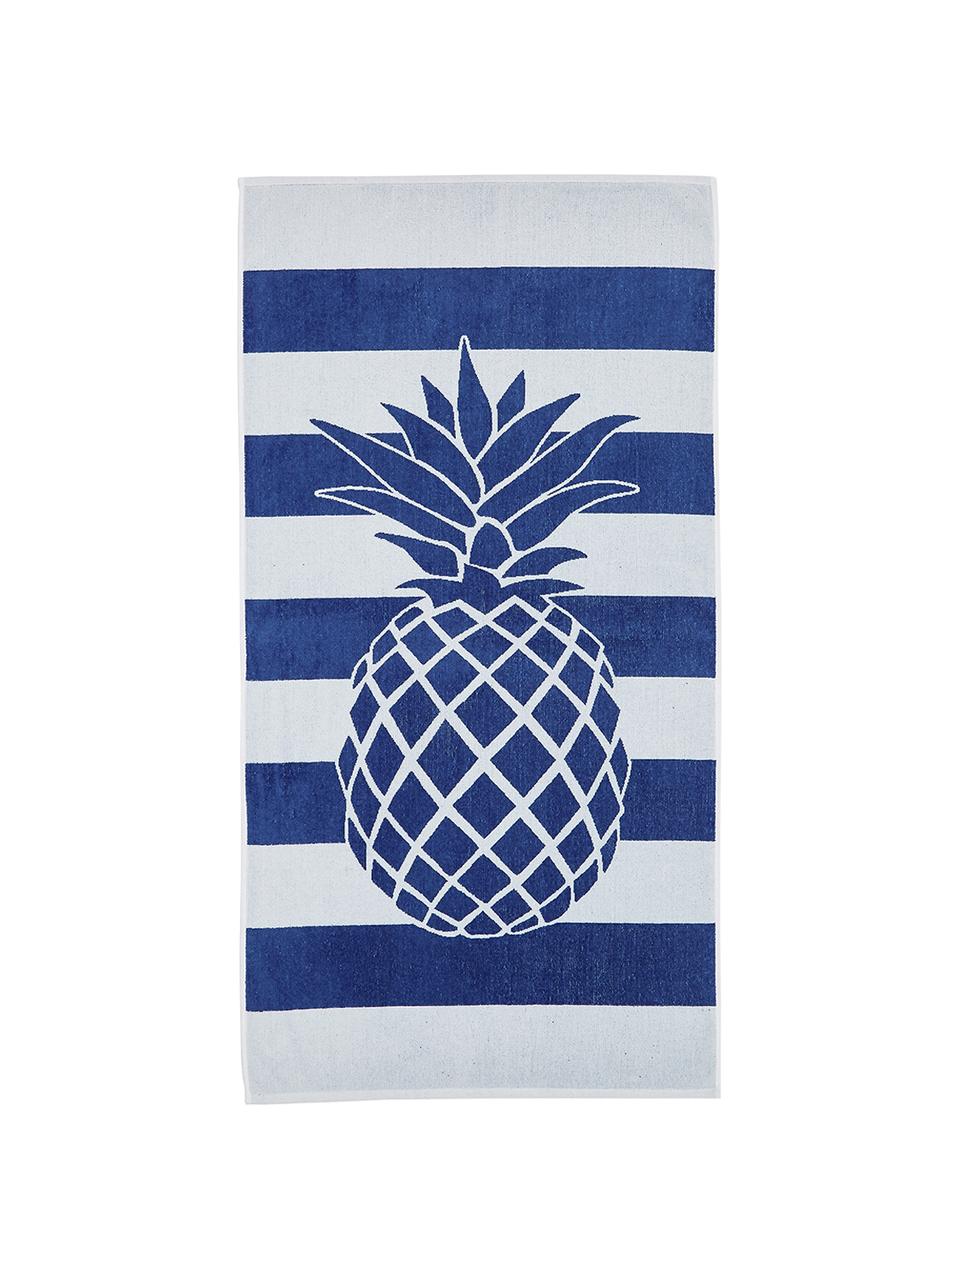 Pruhovaná plážová osuška s motivem ananasu Anas, Modrá, bílá